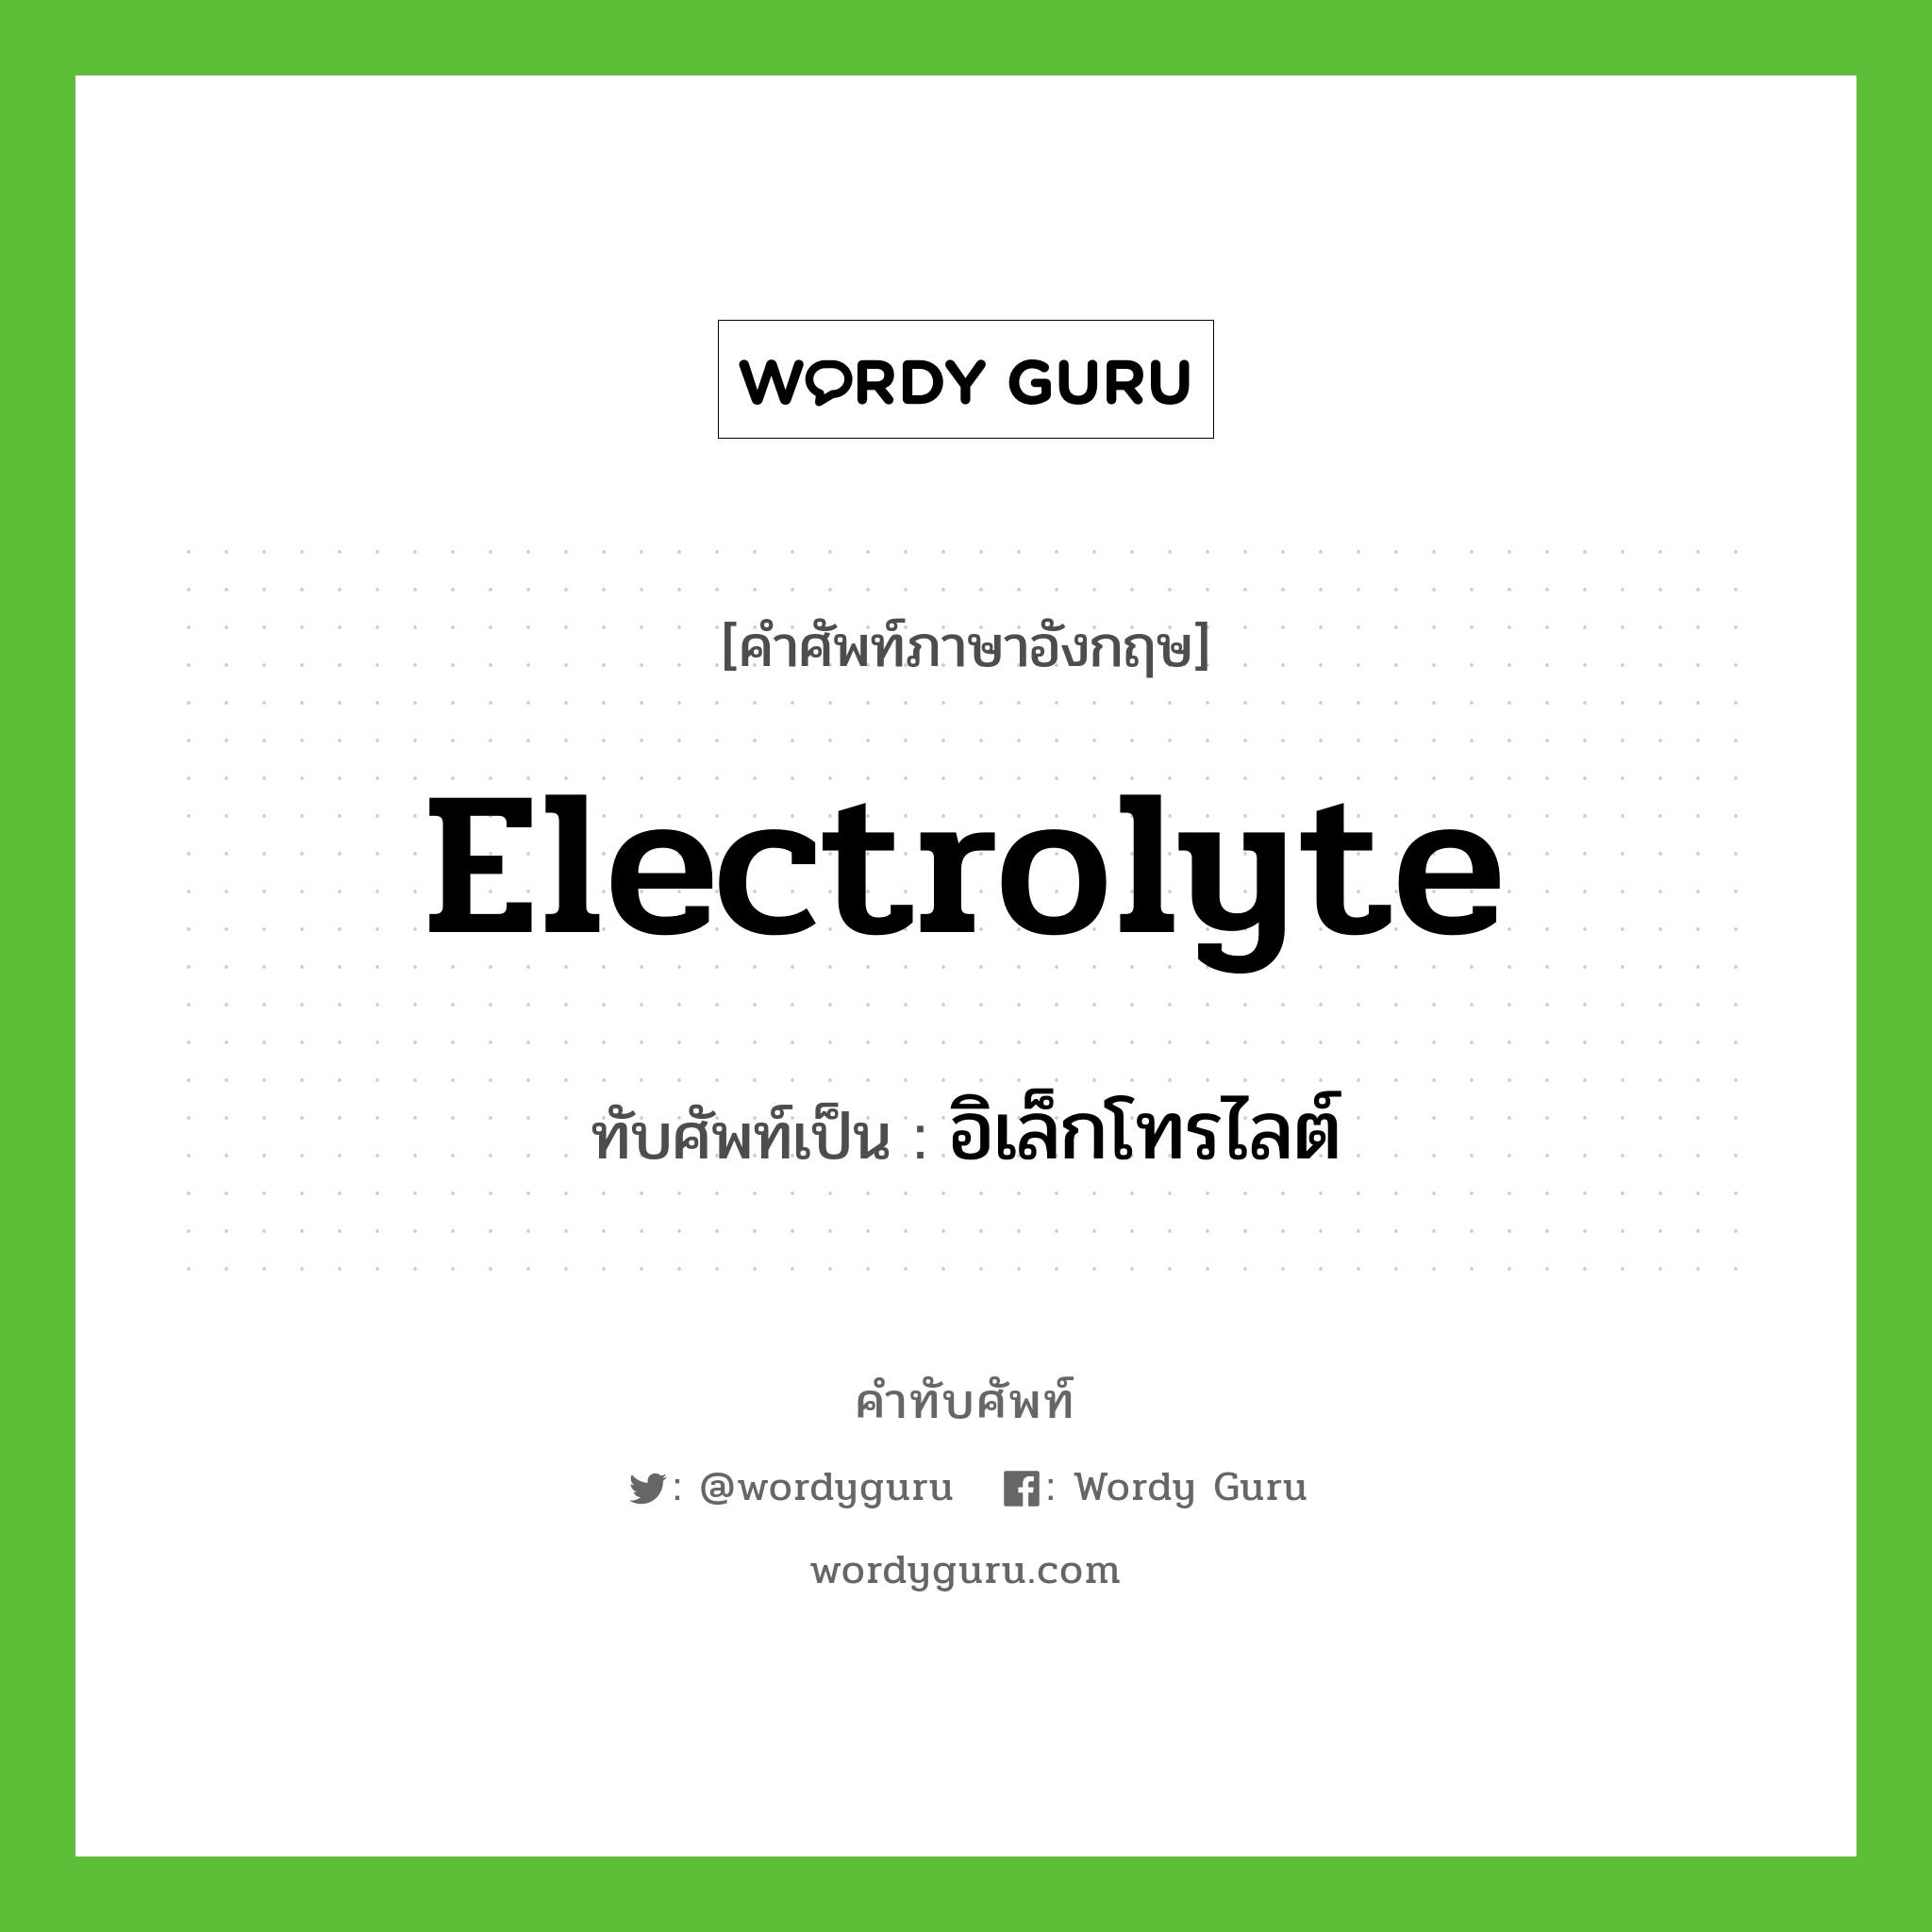 electrolyte เขียนเป็นคำไทยว่าอะไร?, คำศัพท์ภาษาอังกฤษ electrolyte ทับศัพท์เป็น อิเล็กโทรไลต์